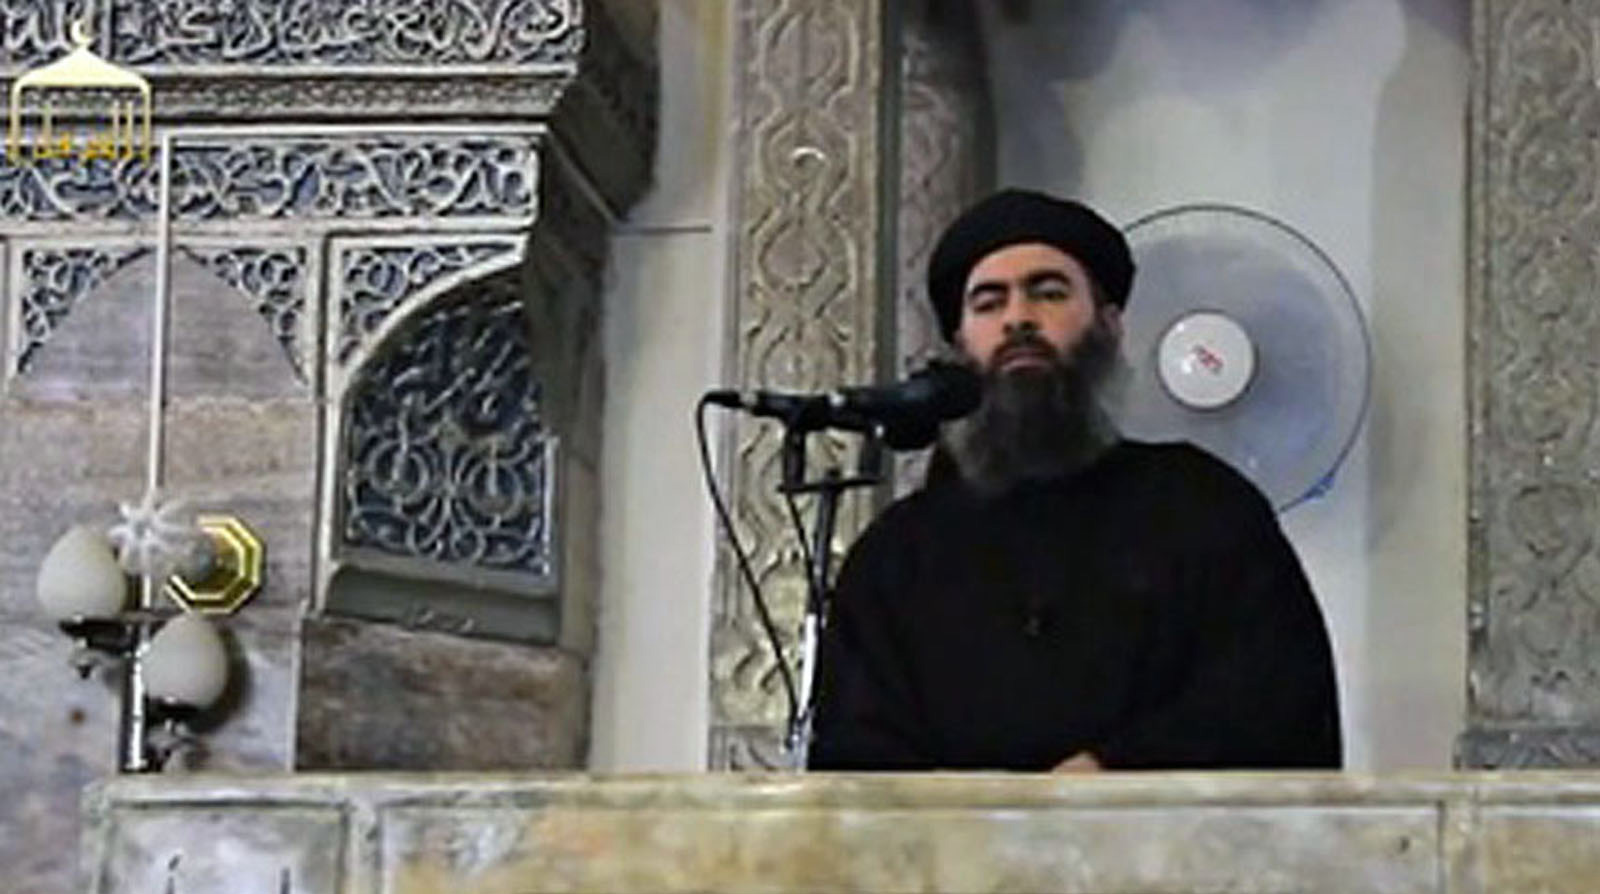 В видеообращении он призывает мусульман уничтожать «неверных» undefined